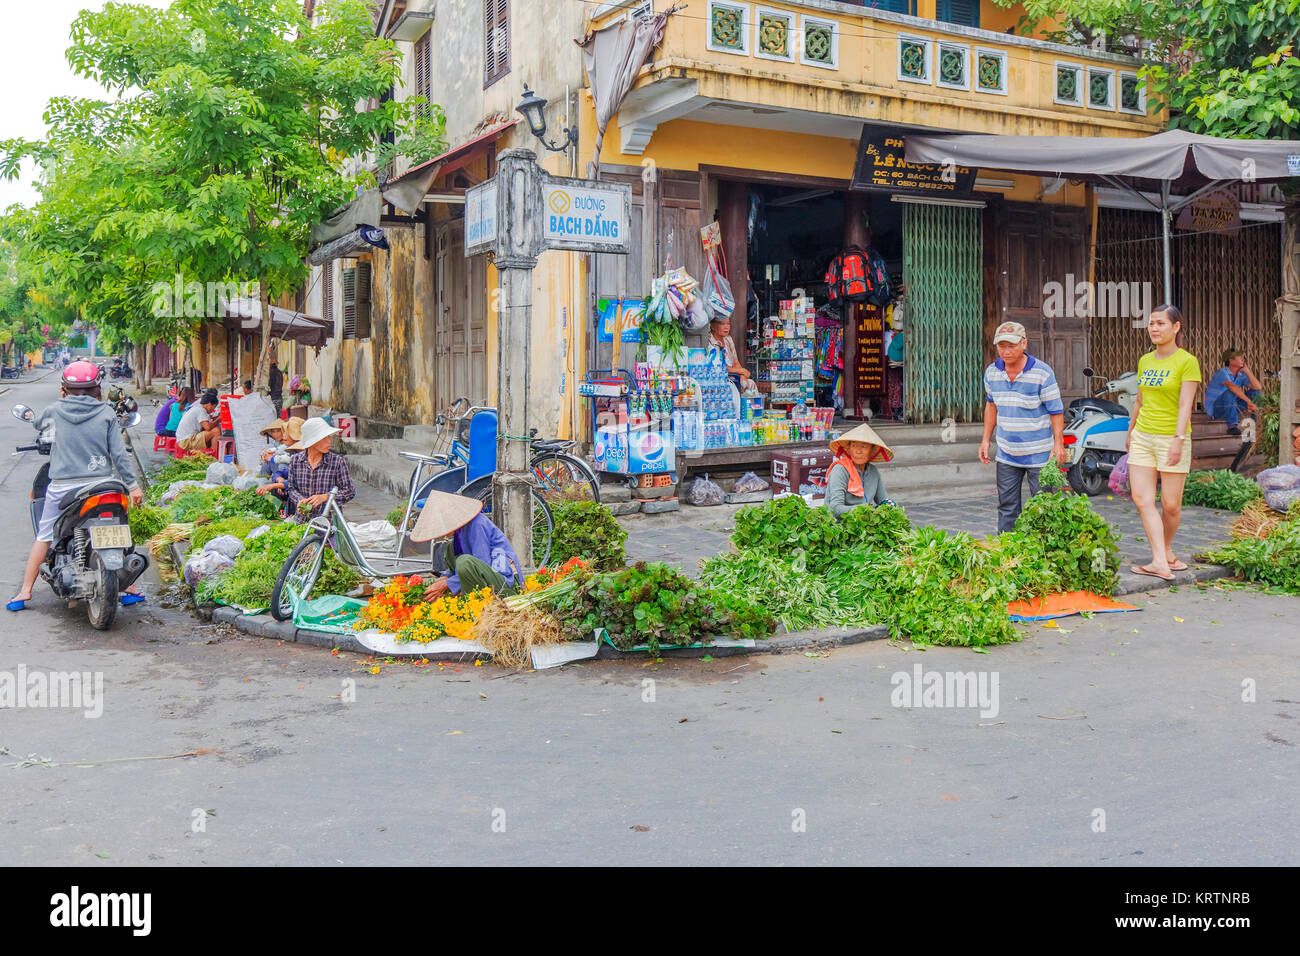 Image libre de droit stock de haute qualité d'Hoi An, Vietnam. Banque D'Images